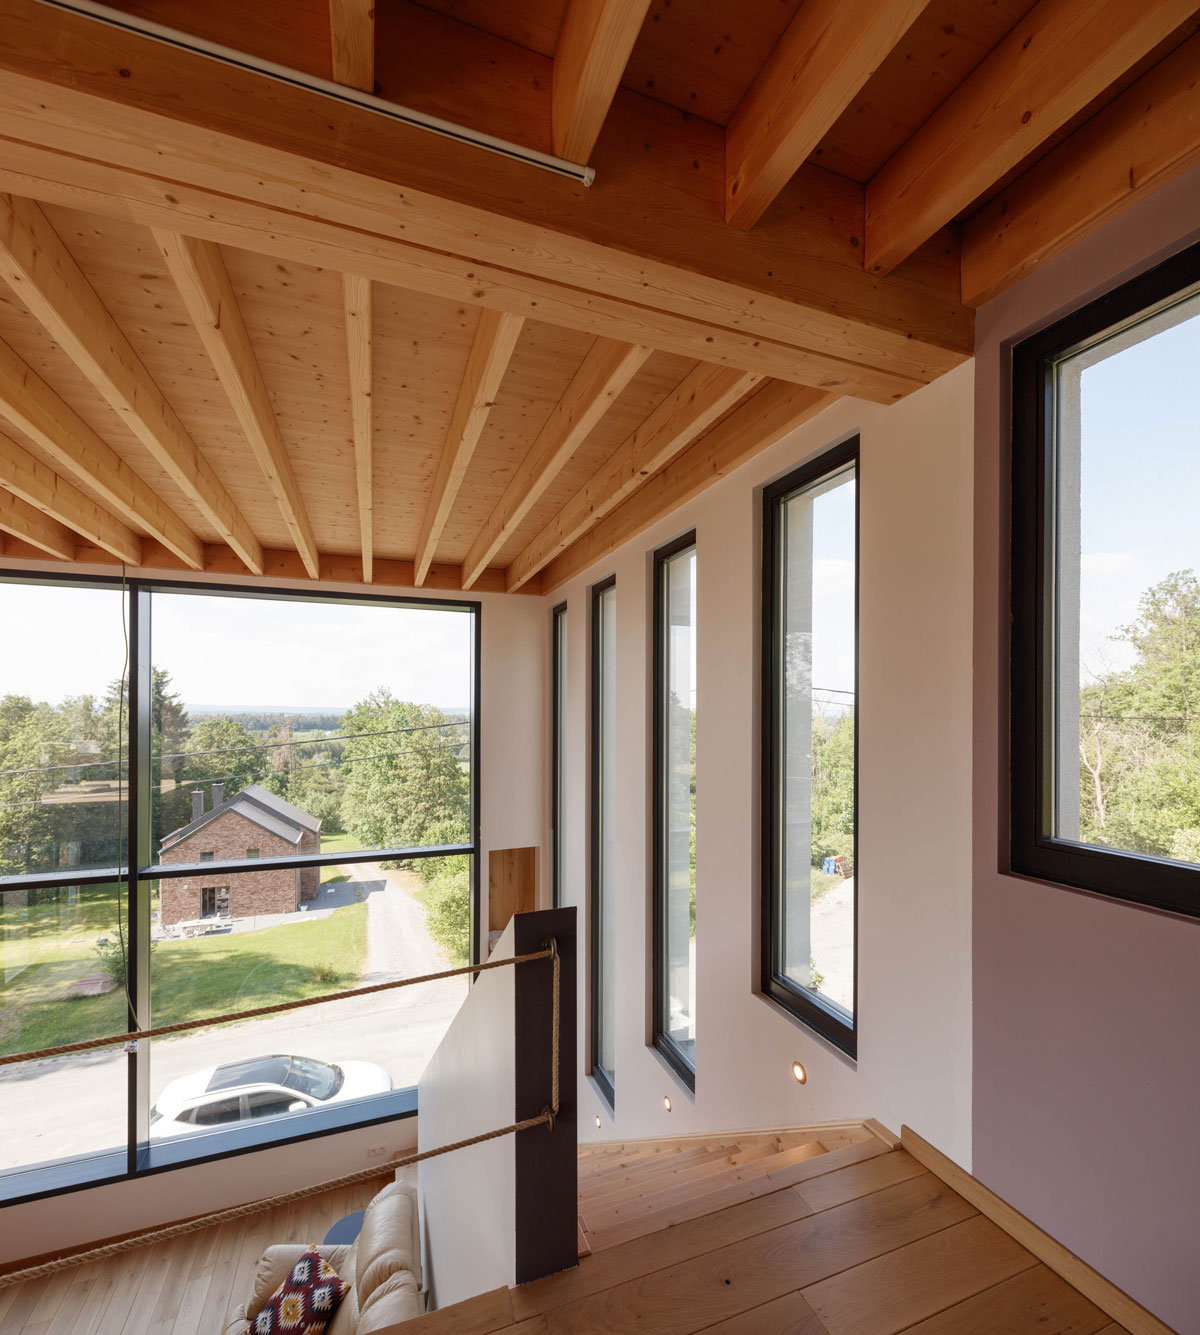 image VISUELS BOIS ou TRADITIONNEL à l’INTERIEUR de votre maison. C’est LA question importante, avec l’architecture, pour s’orienter vers un système constructif de maisons en bois.